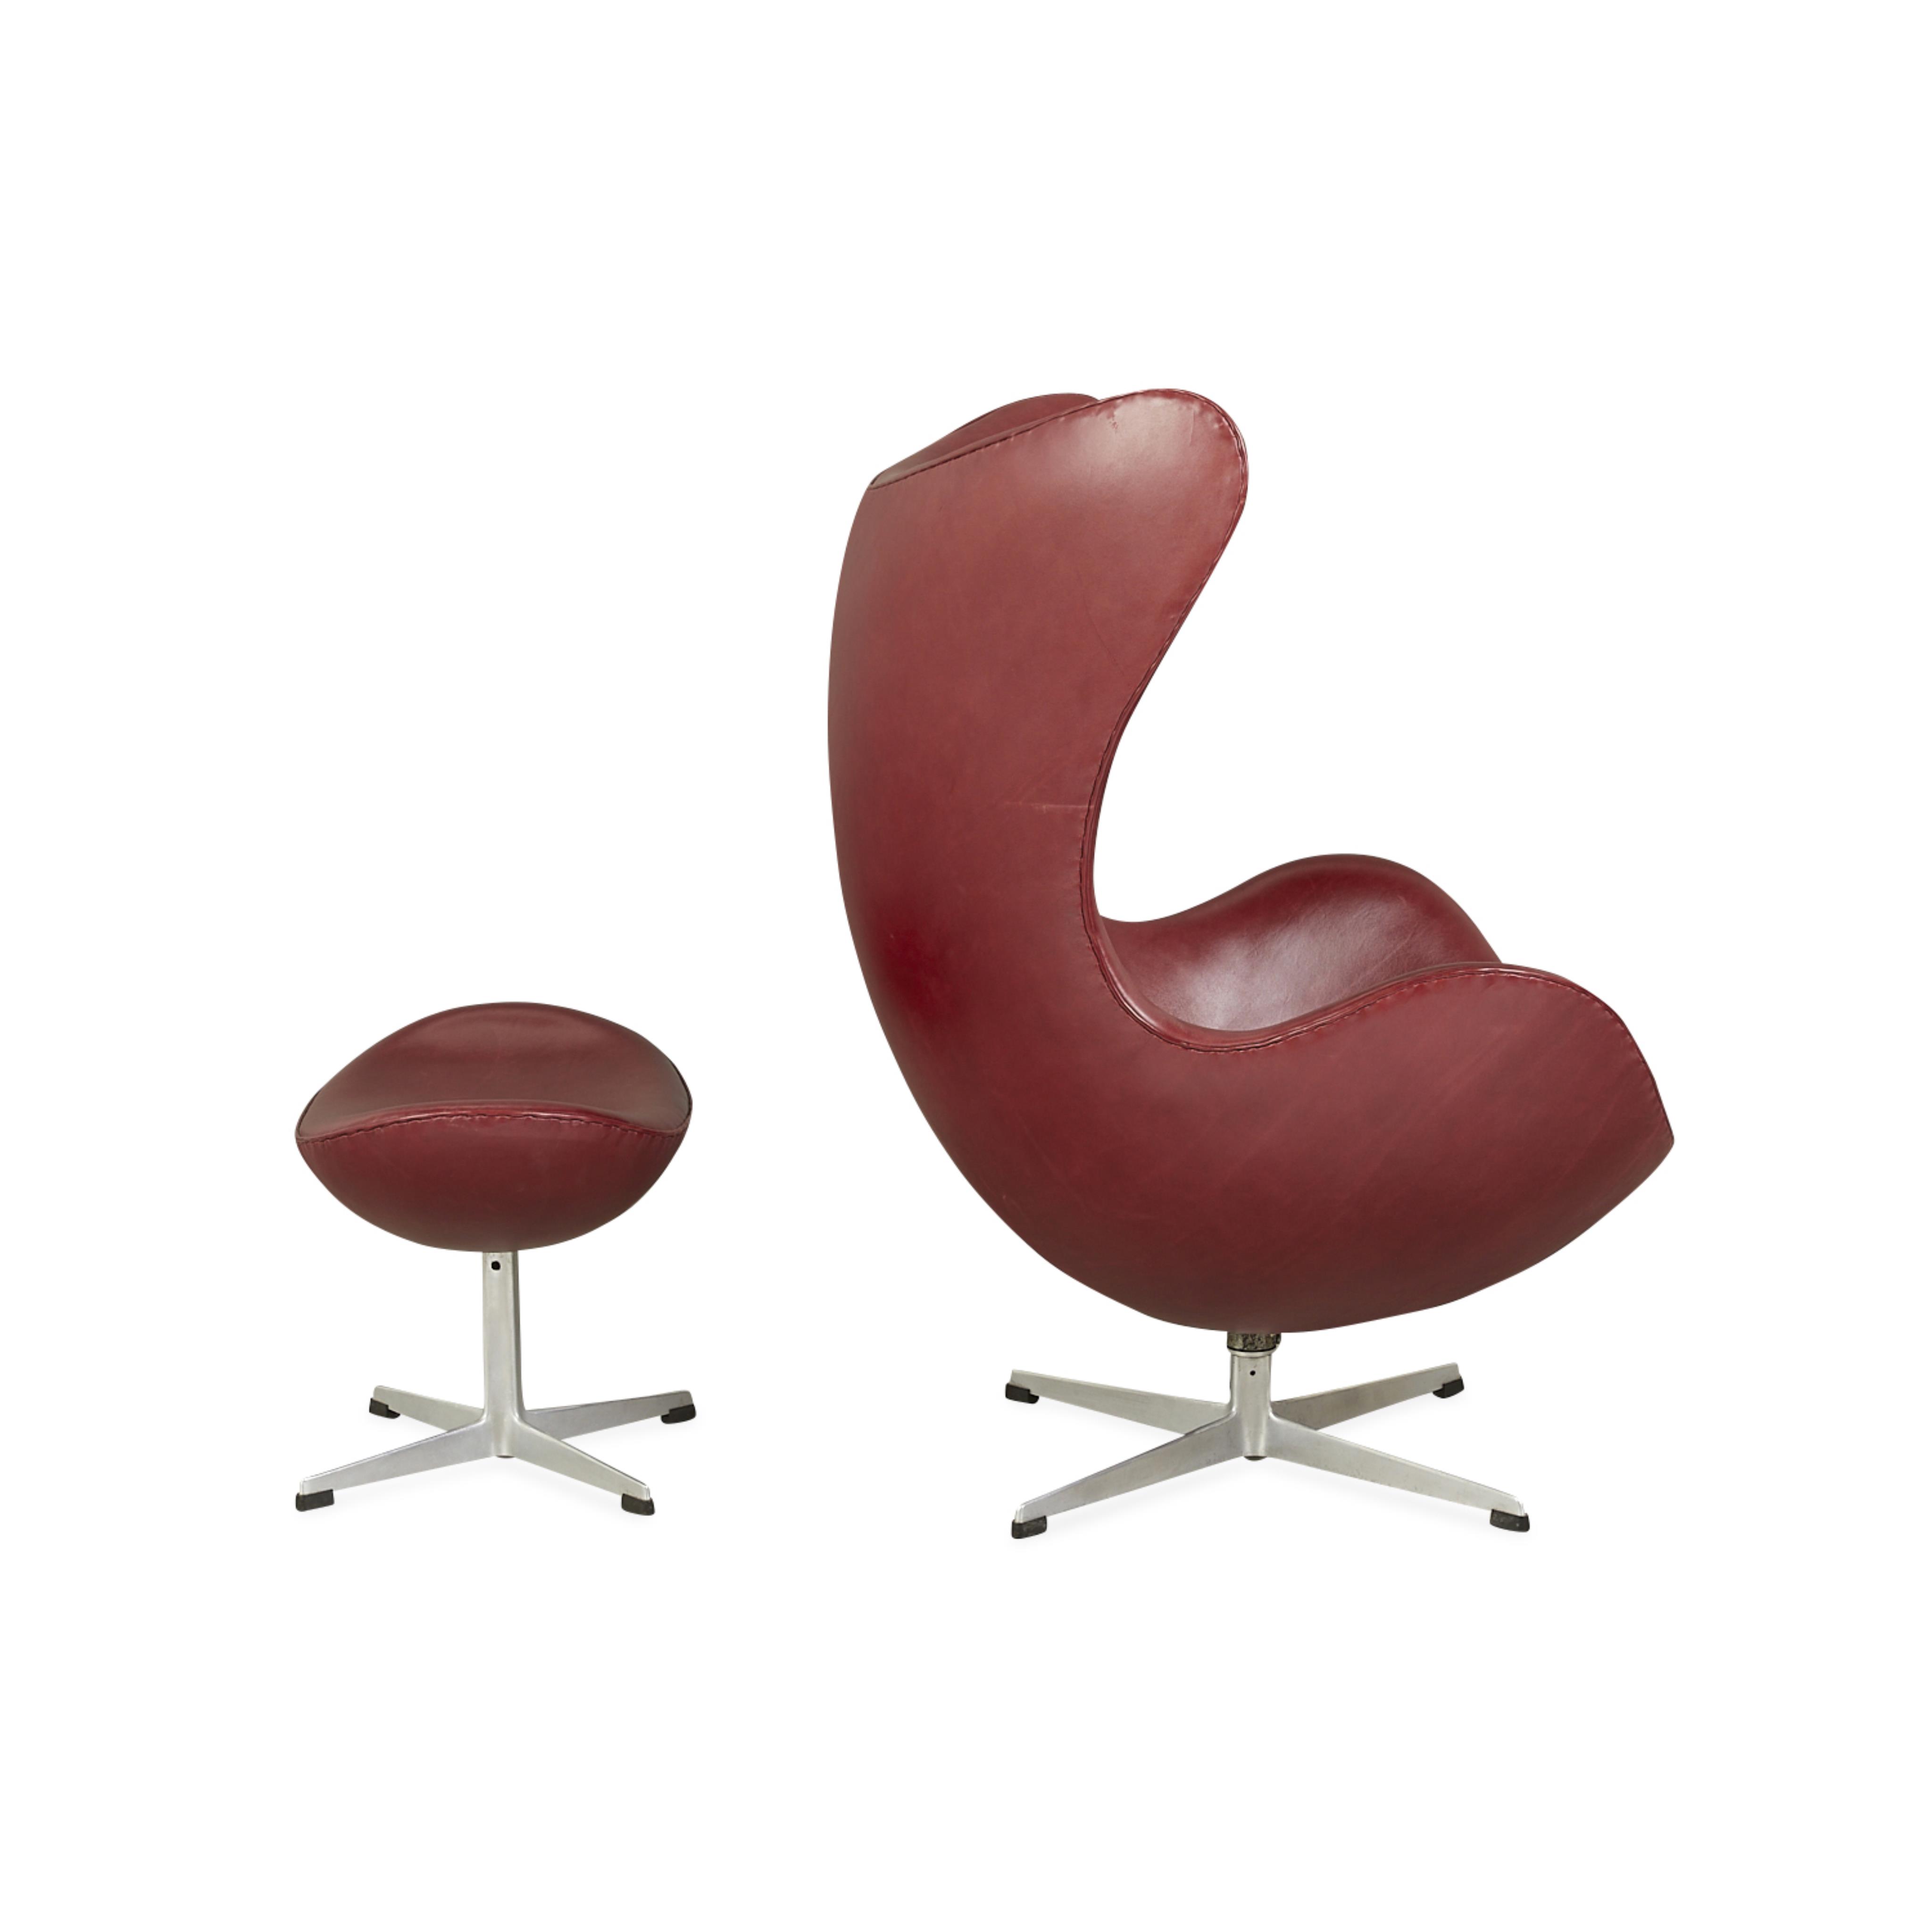 Arne Jacobsen for Hansen Leather Egg Chair 1964 - Image 7 of 17